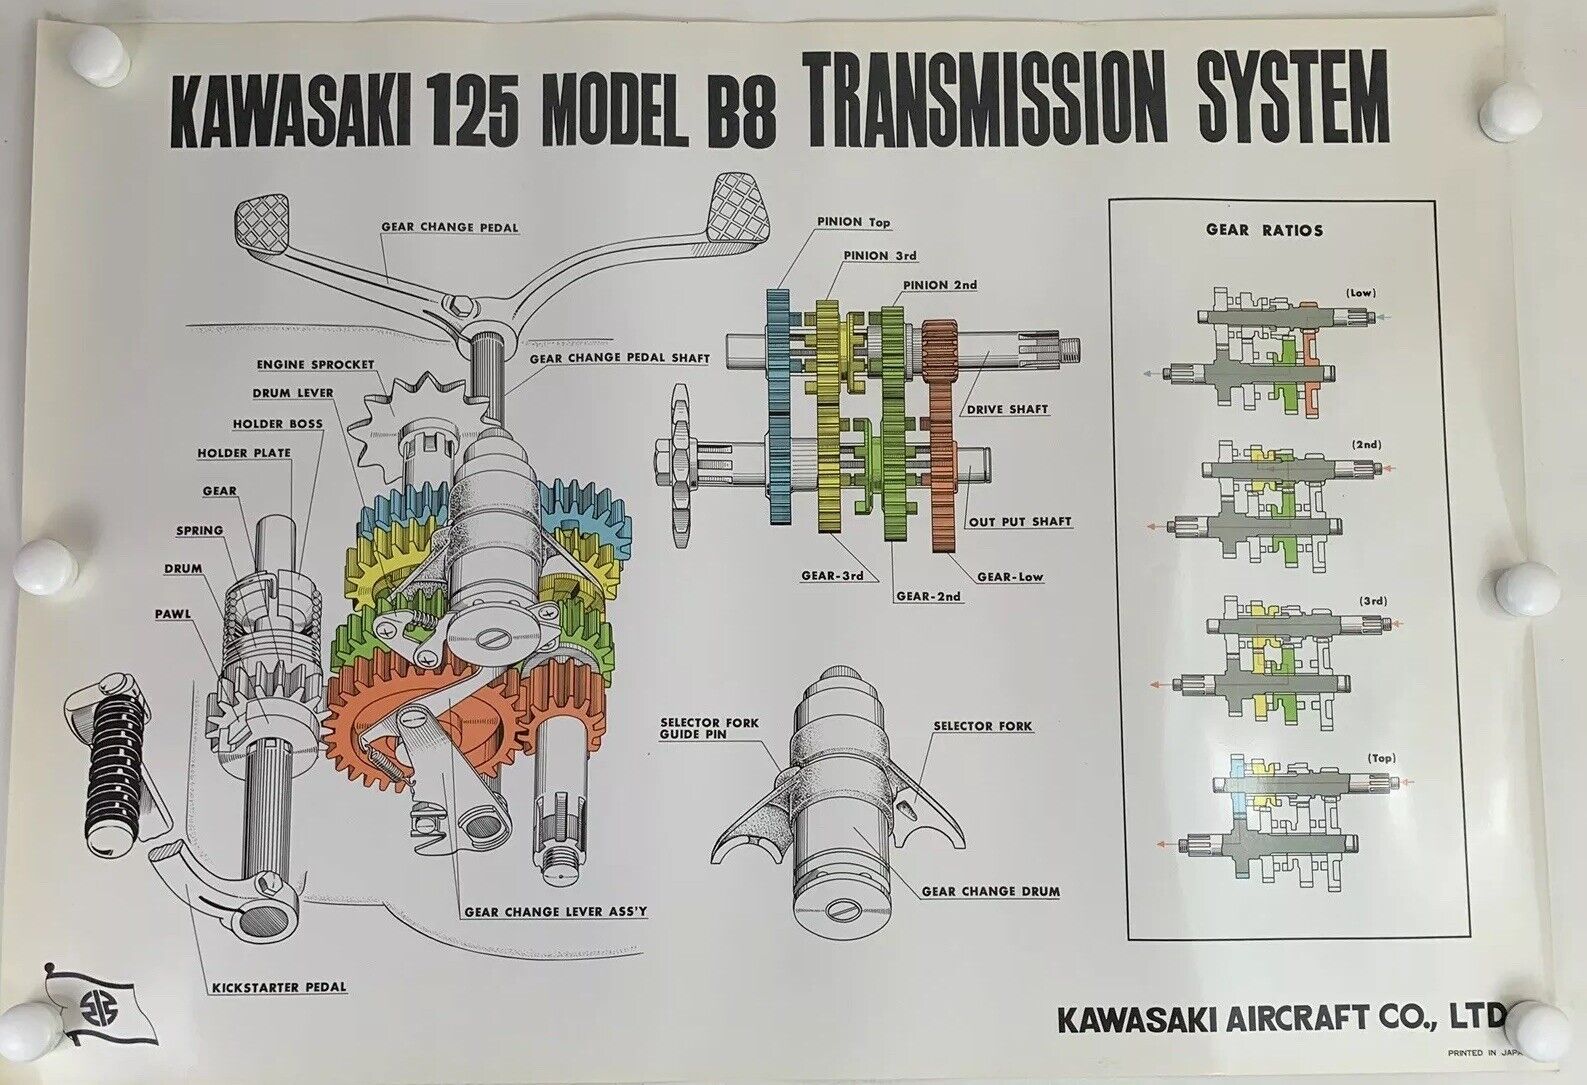 Kawasaki Aircraft Co Shop Poster Exploded Motorcycle Transmission 125 Model B8